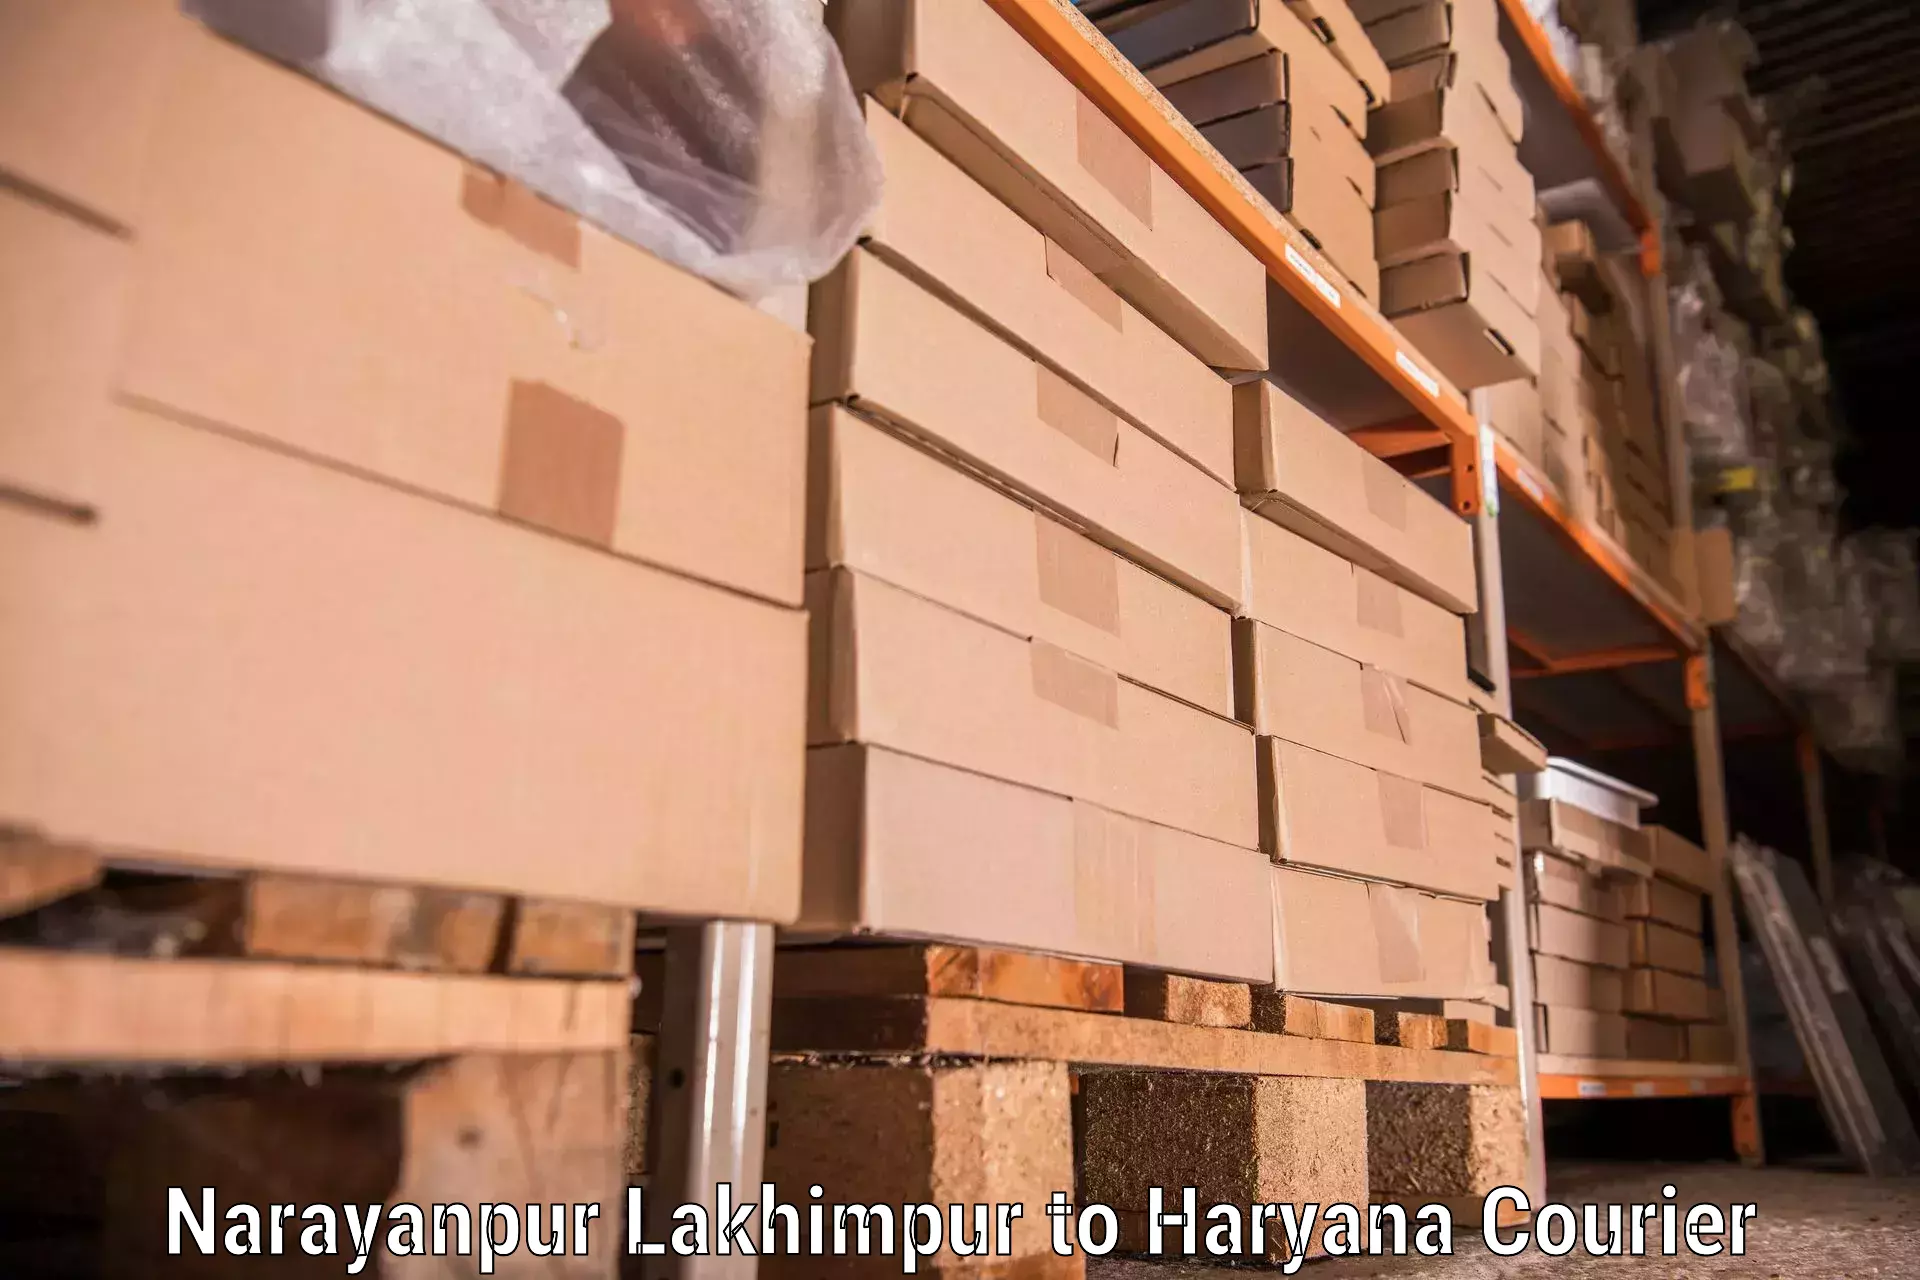 Efficient furniture movers Narayanpur Lakhimpur to Odhan